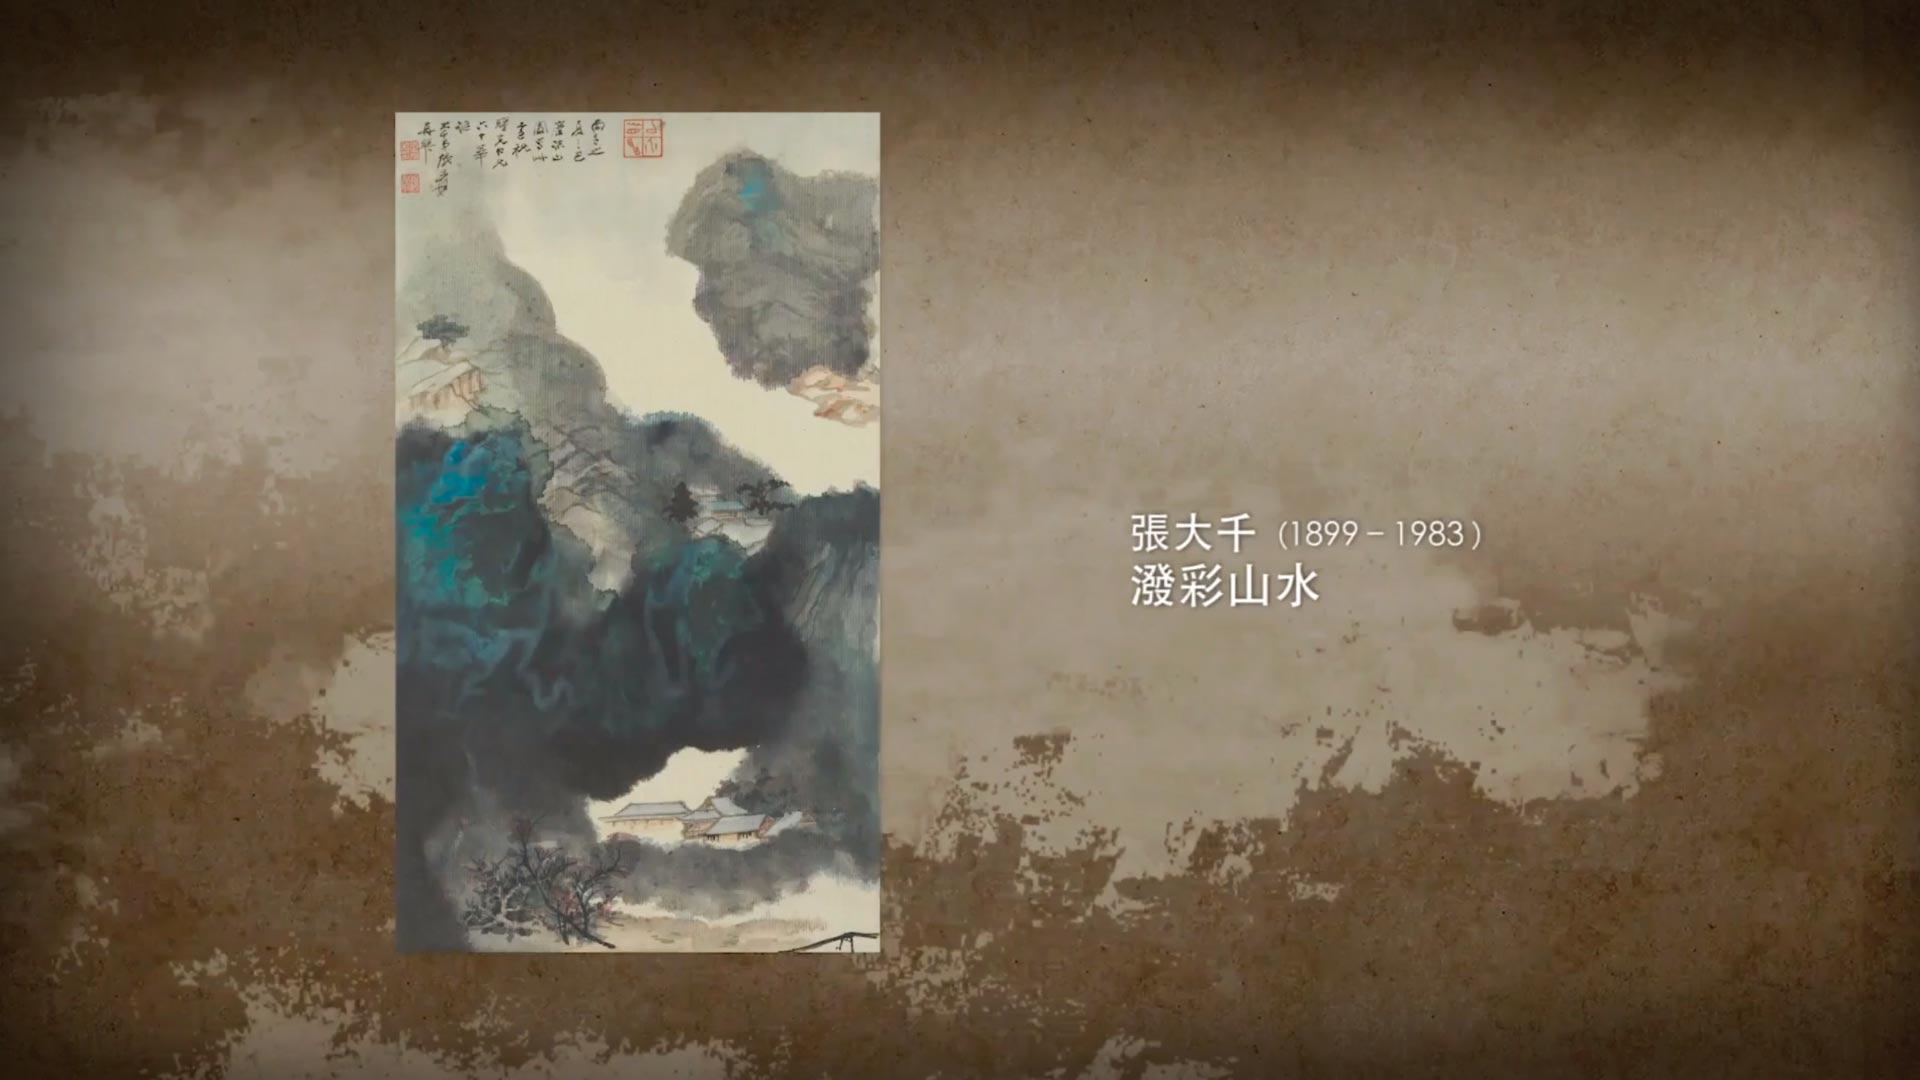 出處:《呼吸美學－中國古畫賞析》- 看山不是山 (2021) <p>畫作提供：香港藝術館至樂樓藏</p>